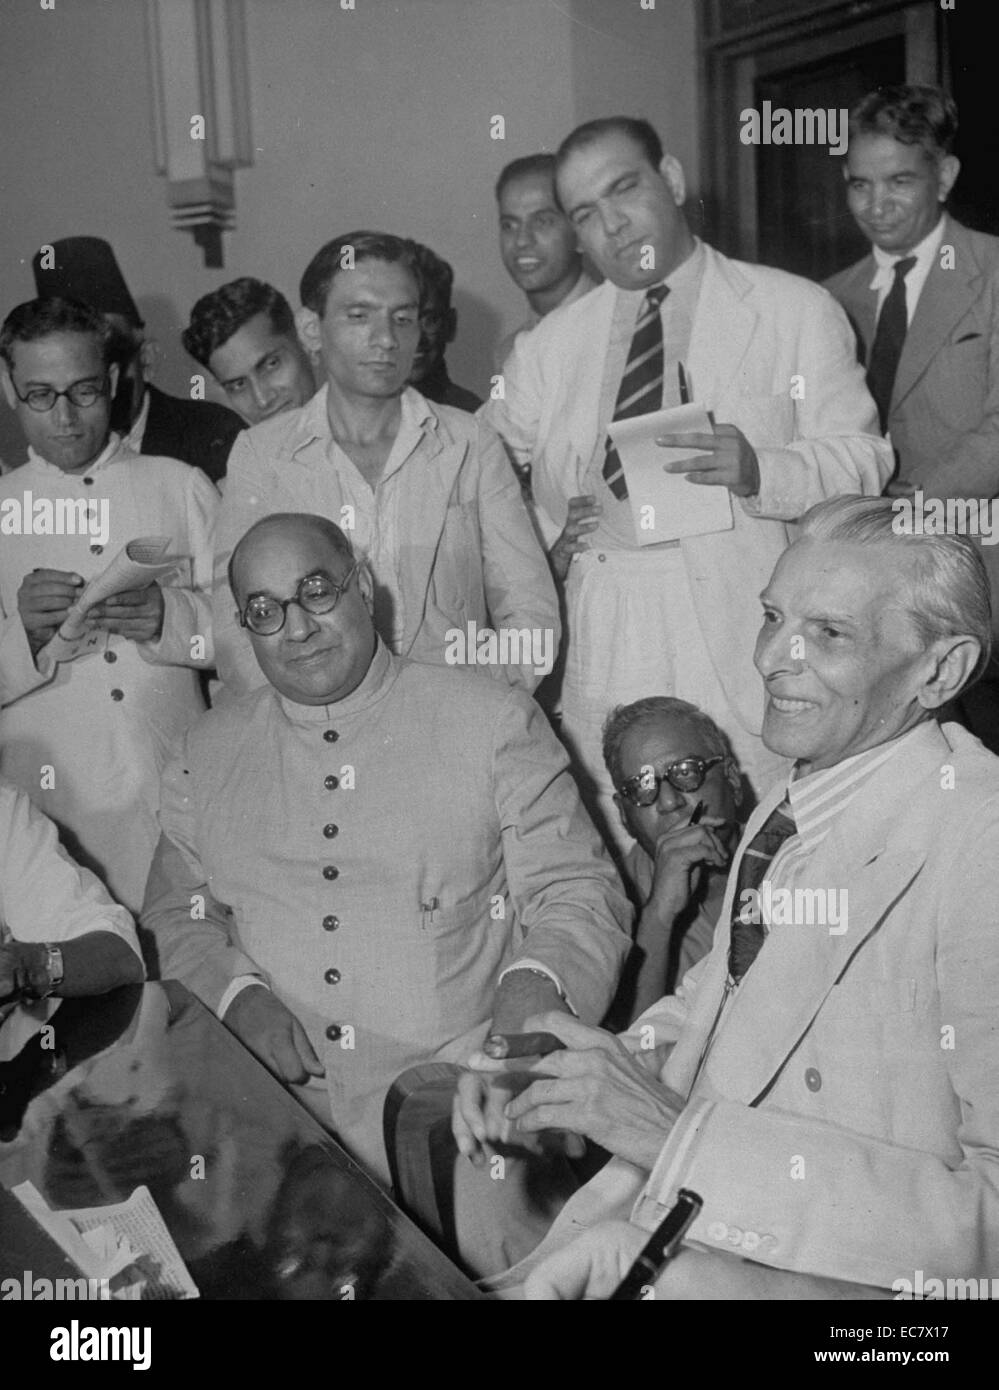 Muhammad Ali Jinnah e Liaquat Ali Khan sono denominati come il primo governatore generale e primo ministro del Pakistan rispettivamente. Entrambi sono considerati come i padri fondatori della moderna del Pakistan e Khan è il più longevo Primo ministro di questo giorno. Foto Stock